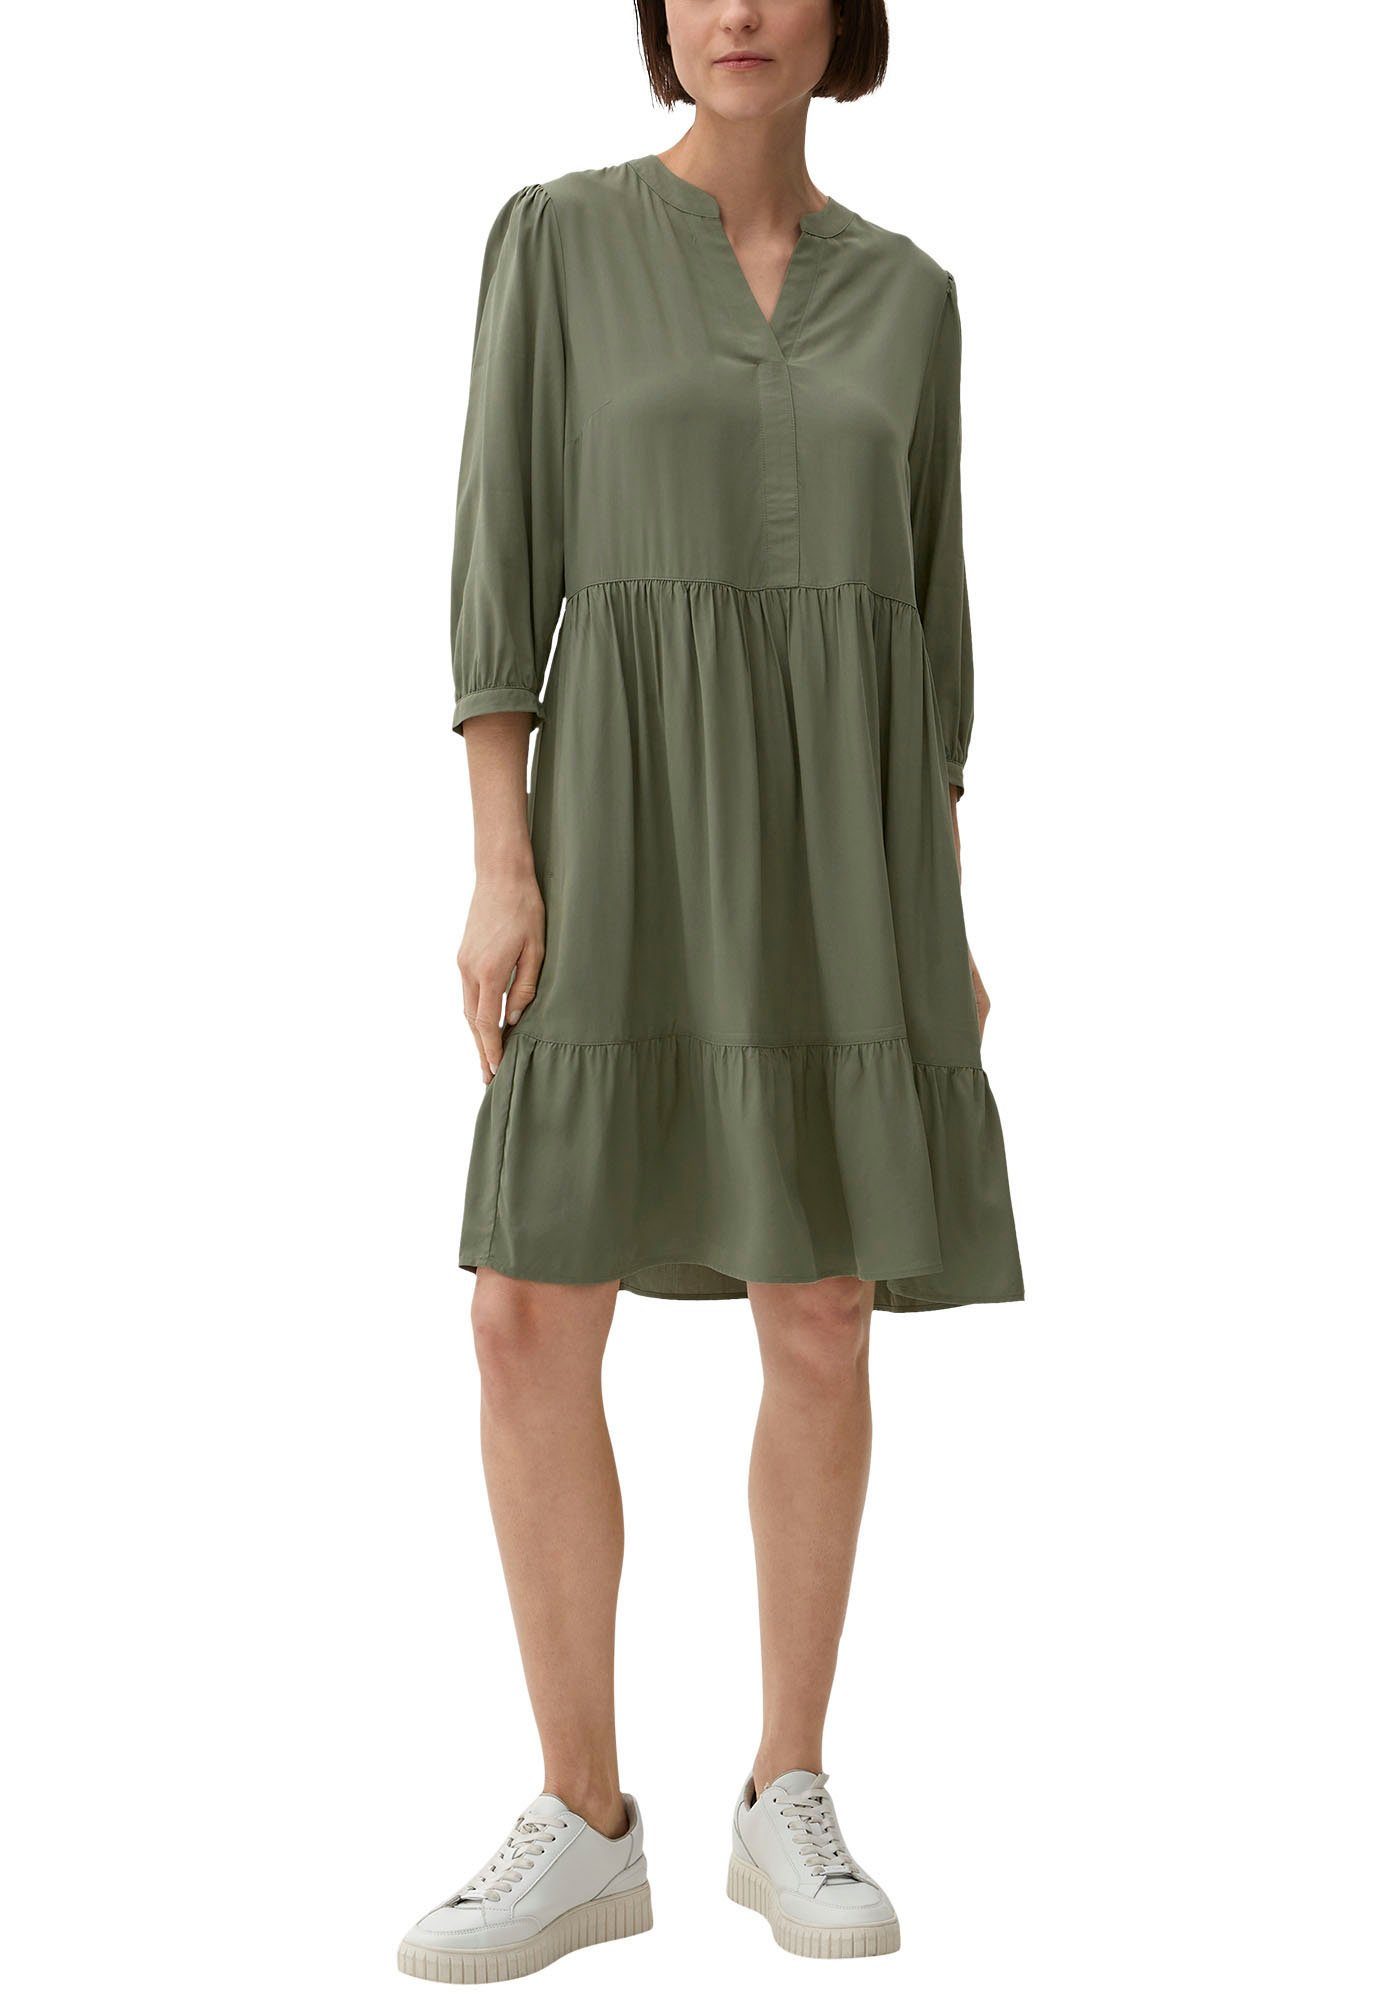 Grüne OPUS Kleider für Damen online kaufen | OTTO